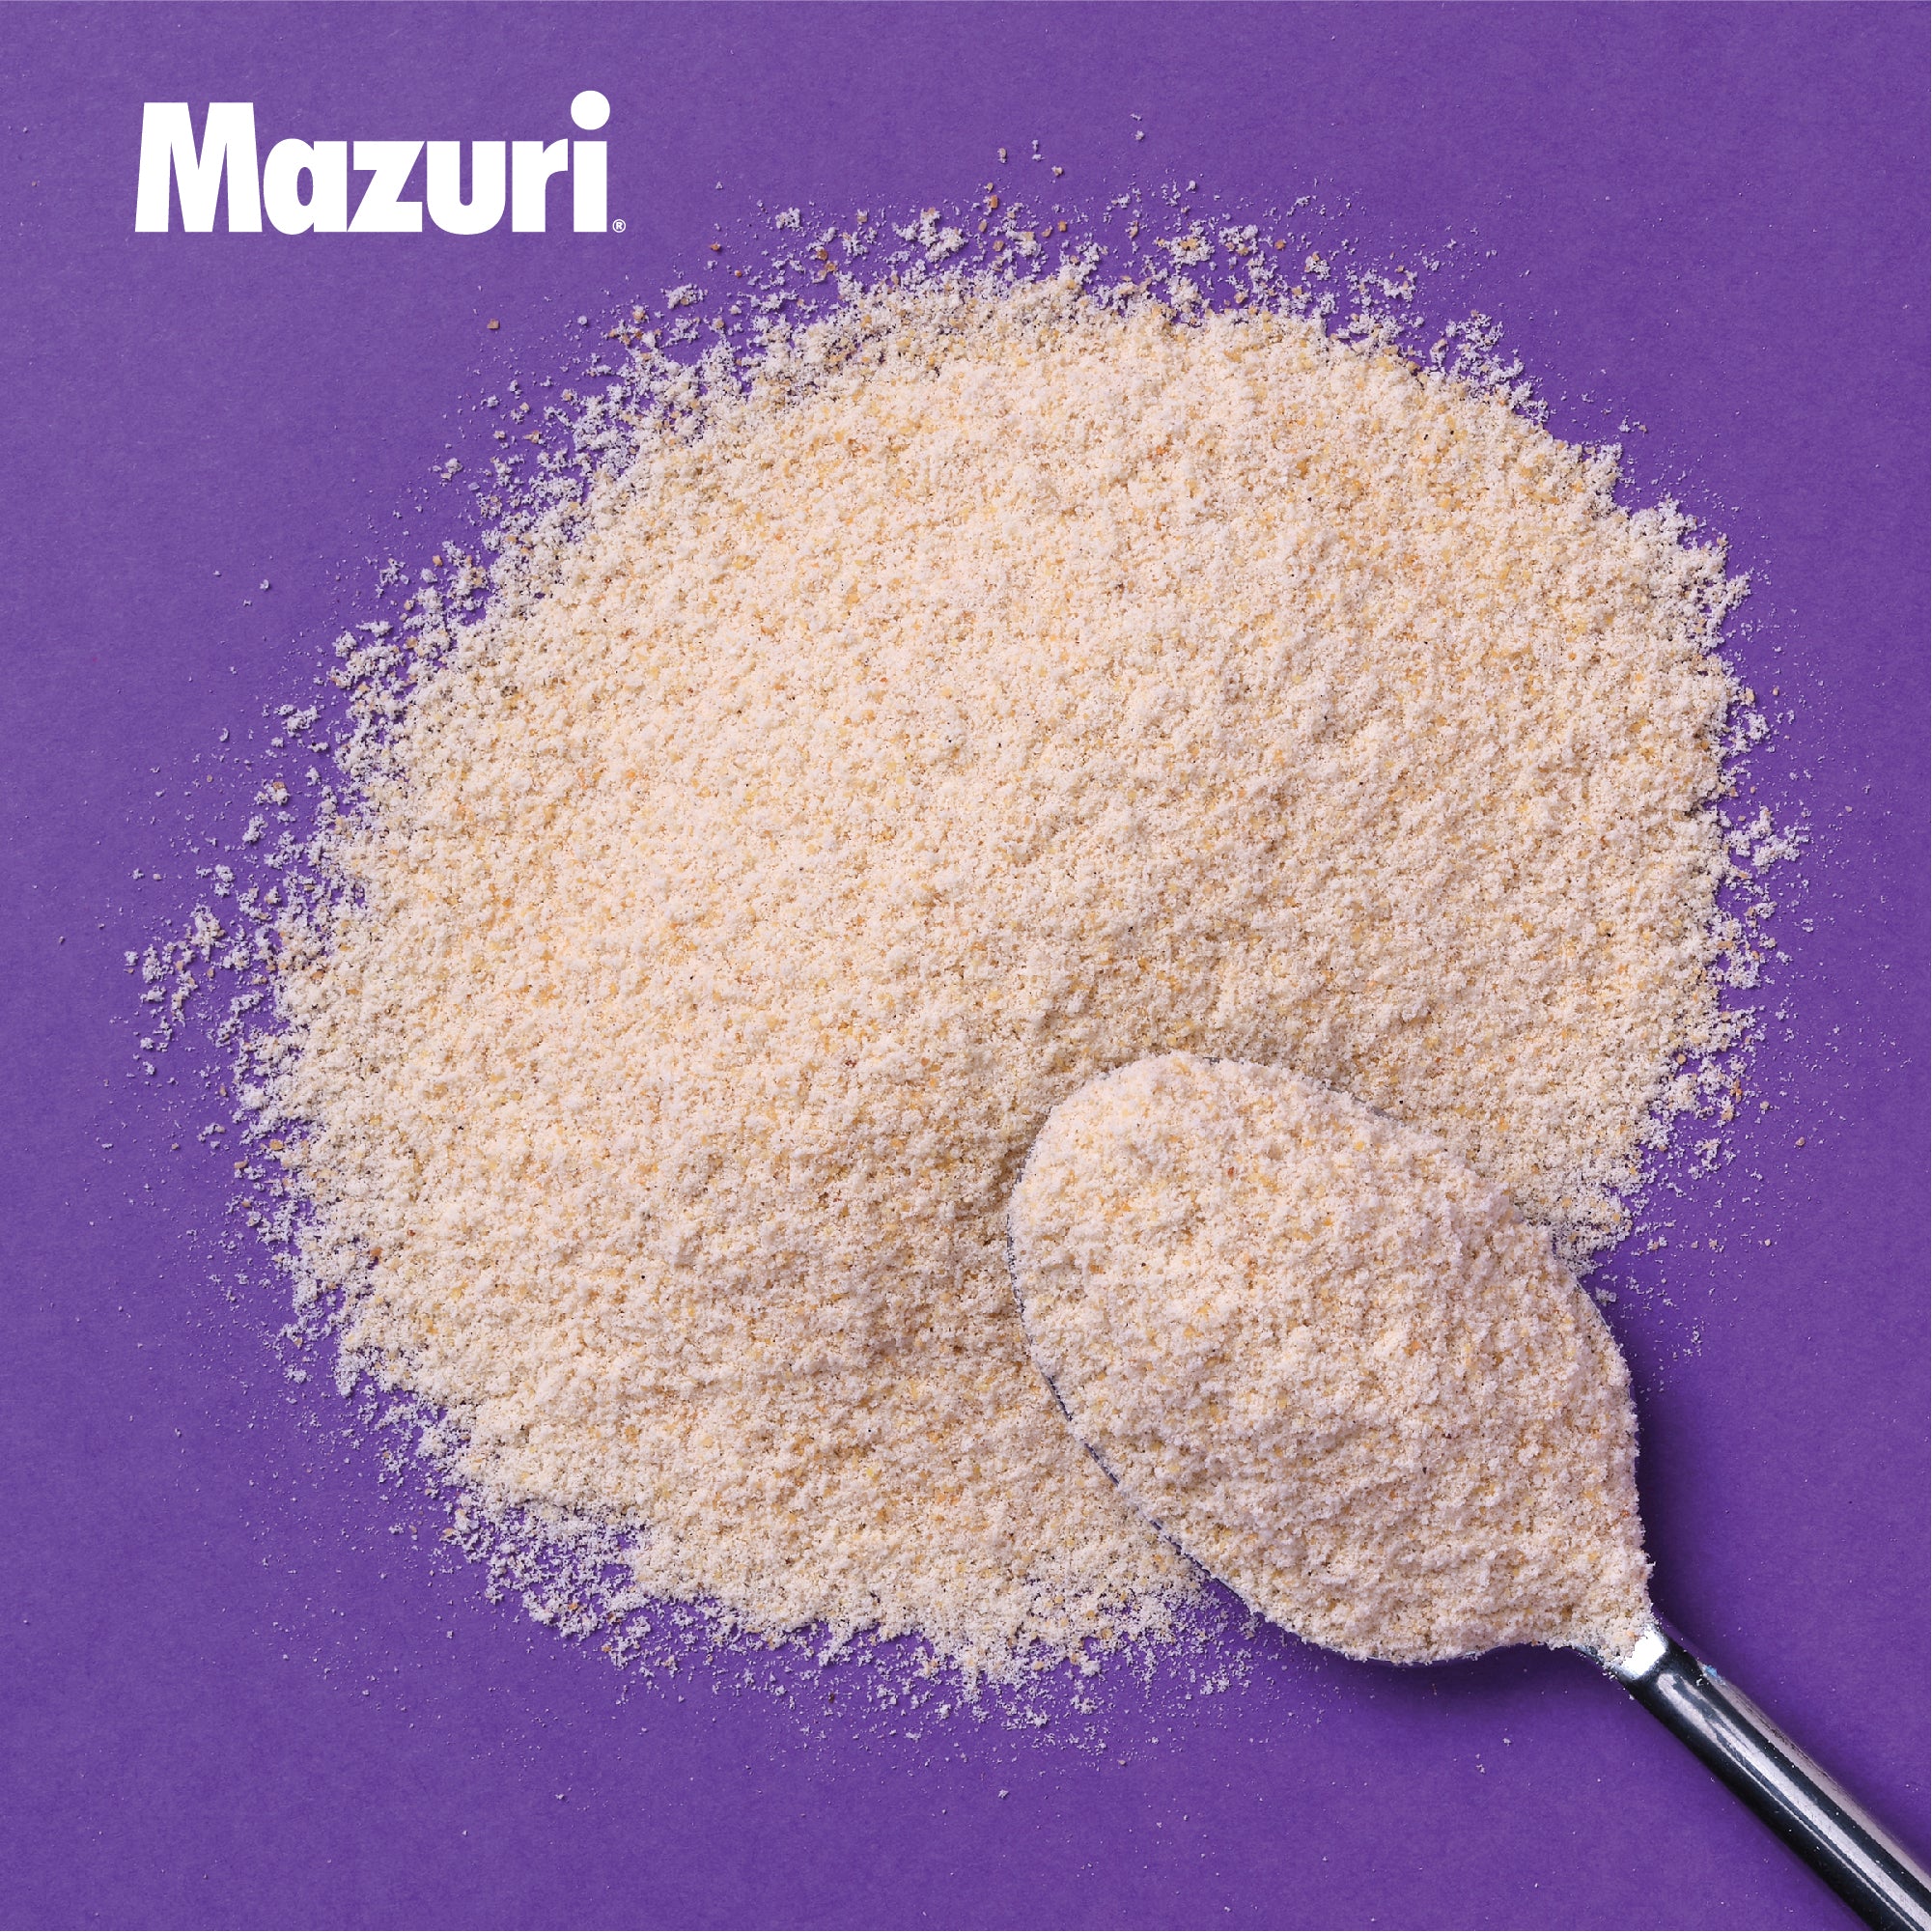 Mazuri® Hand Feeding Formula